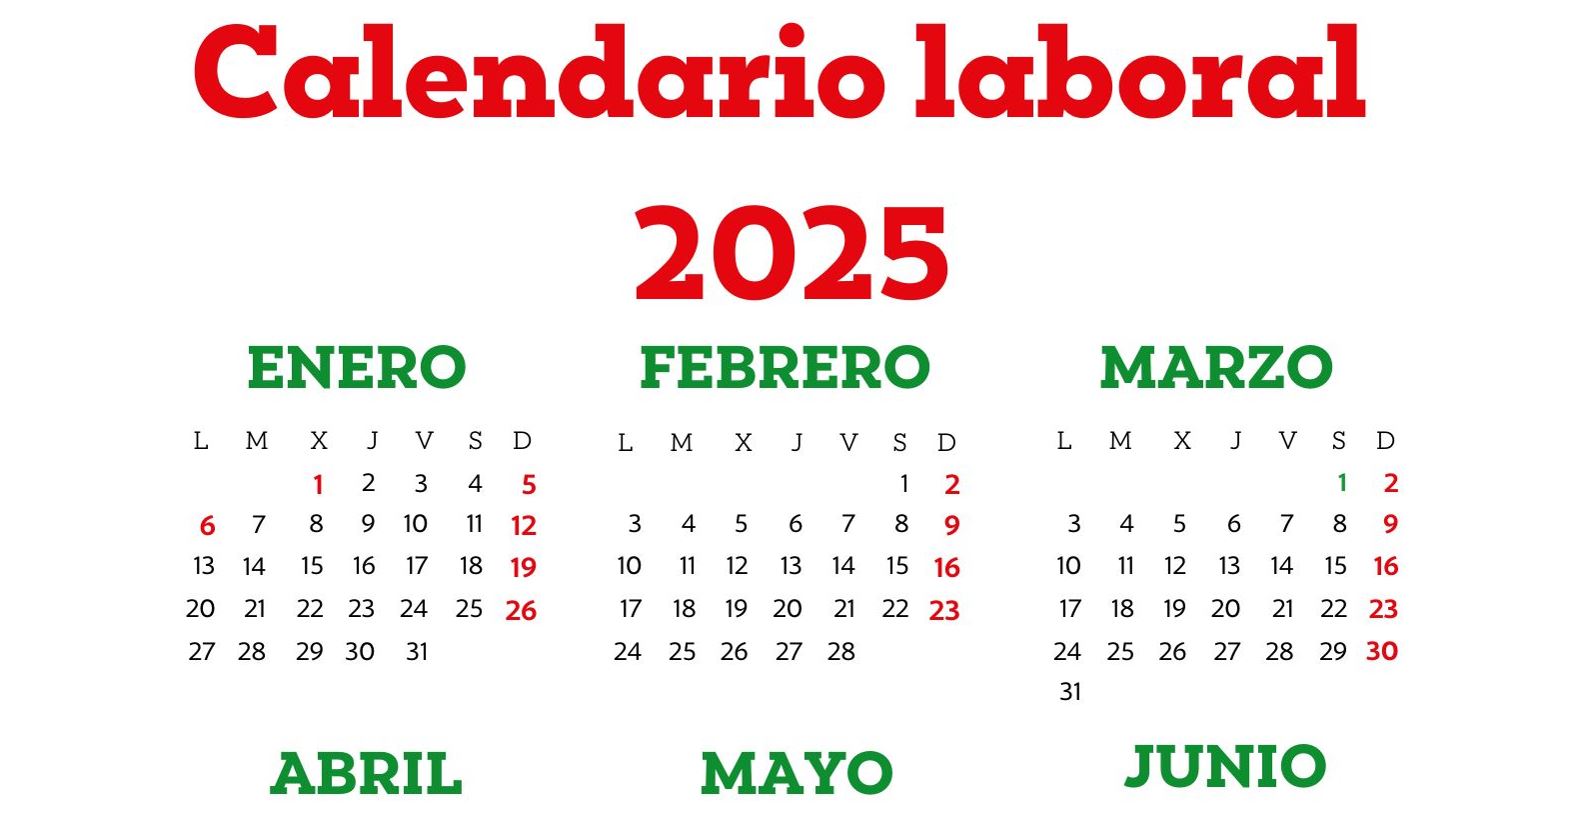 Calendario laboral y de festivos para 2025 en Álava y Euskadi